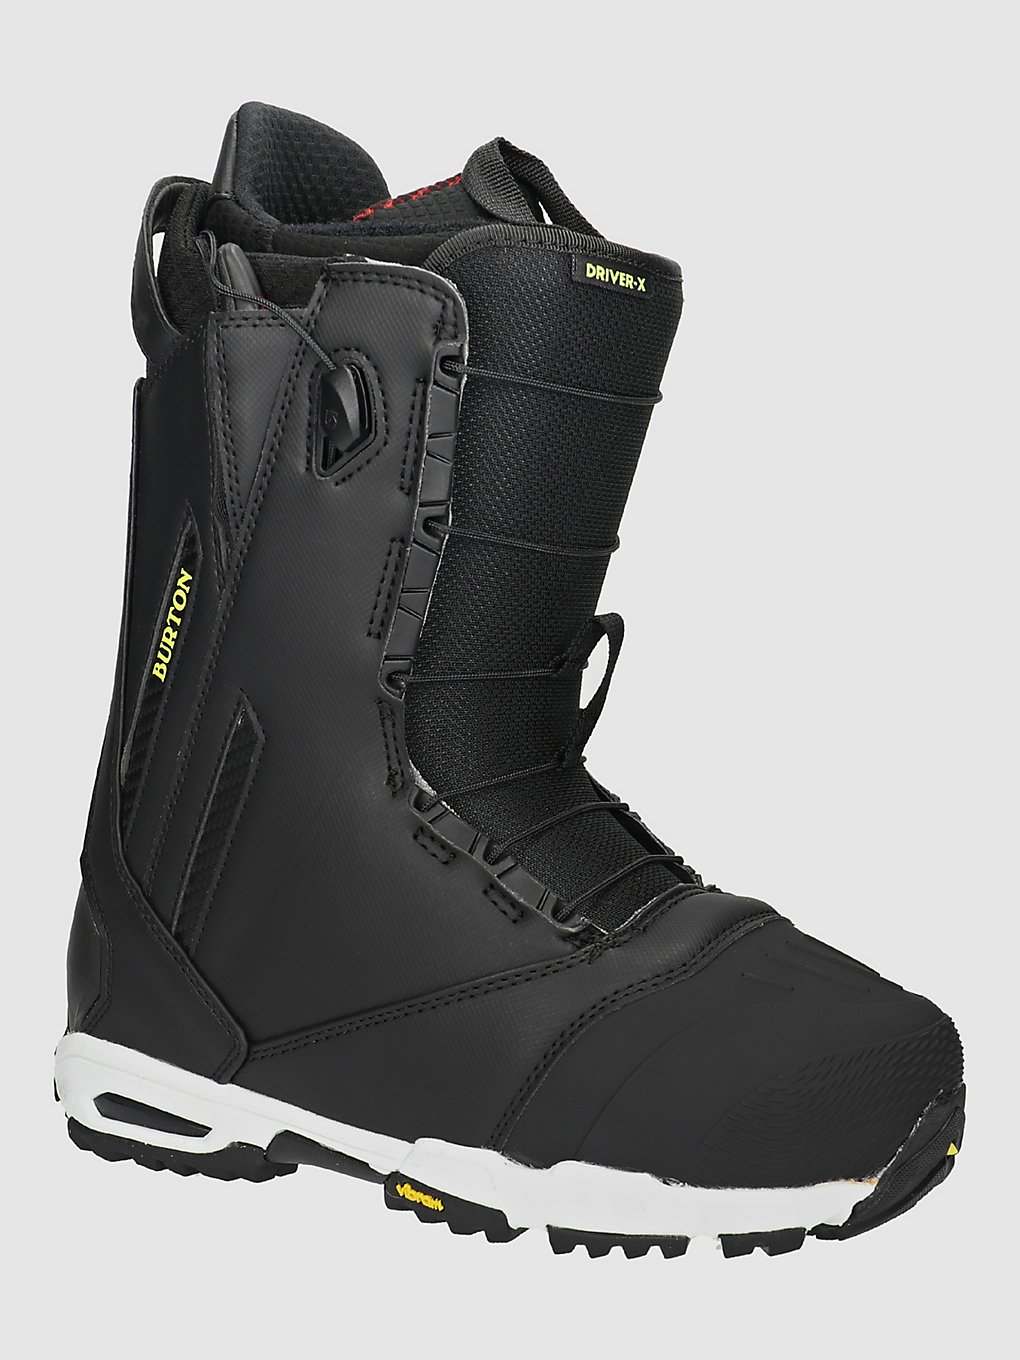 Burton Driver X 2024 Snowboard-Boots black kaufen